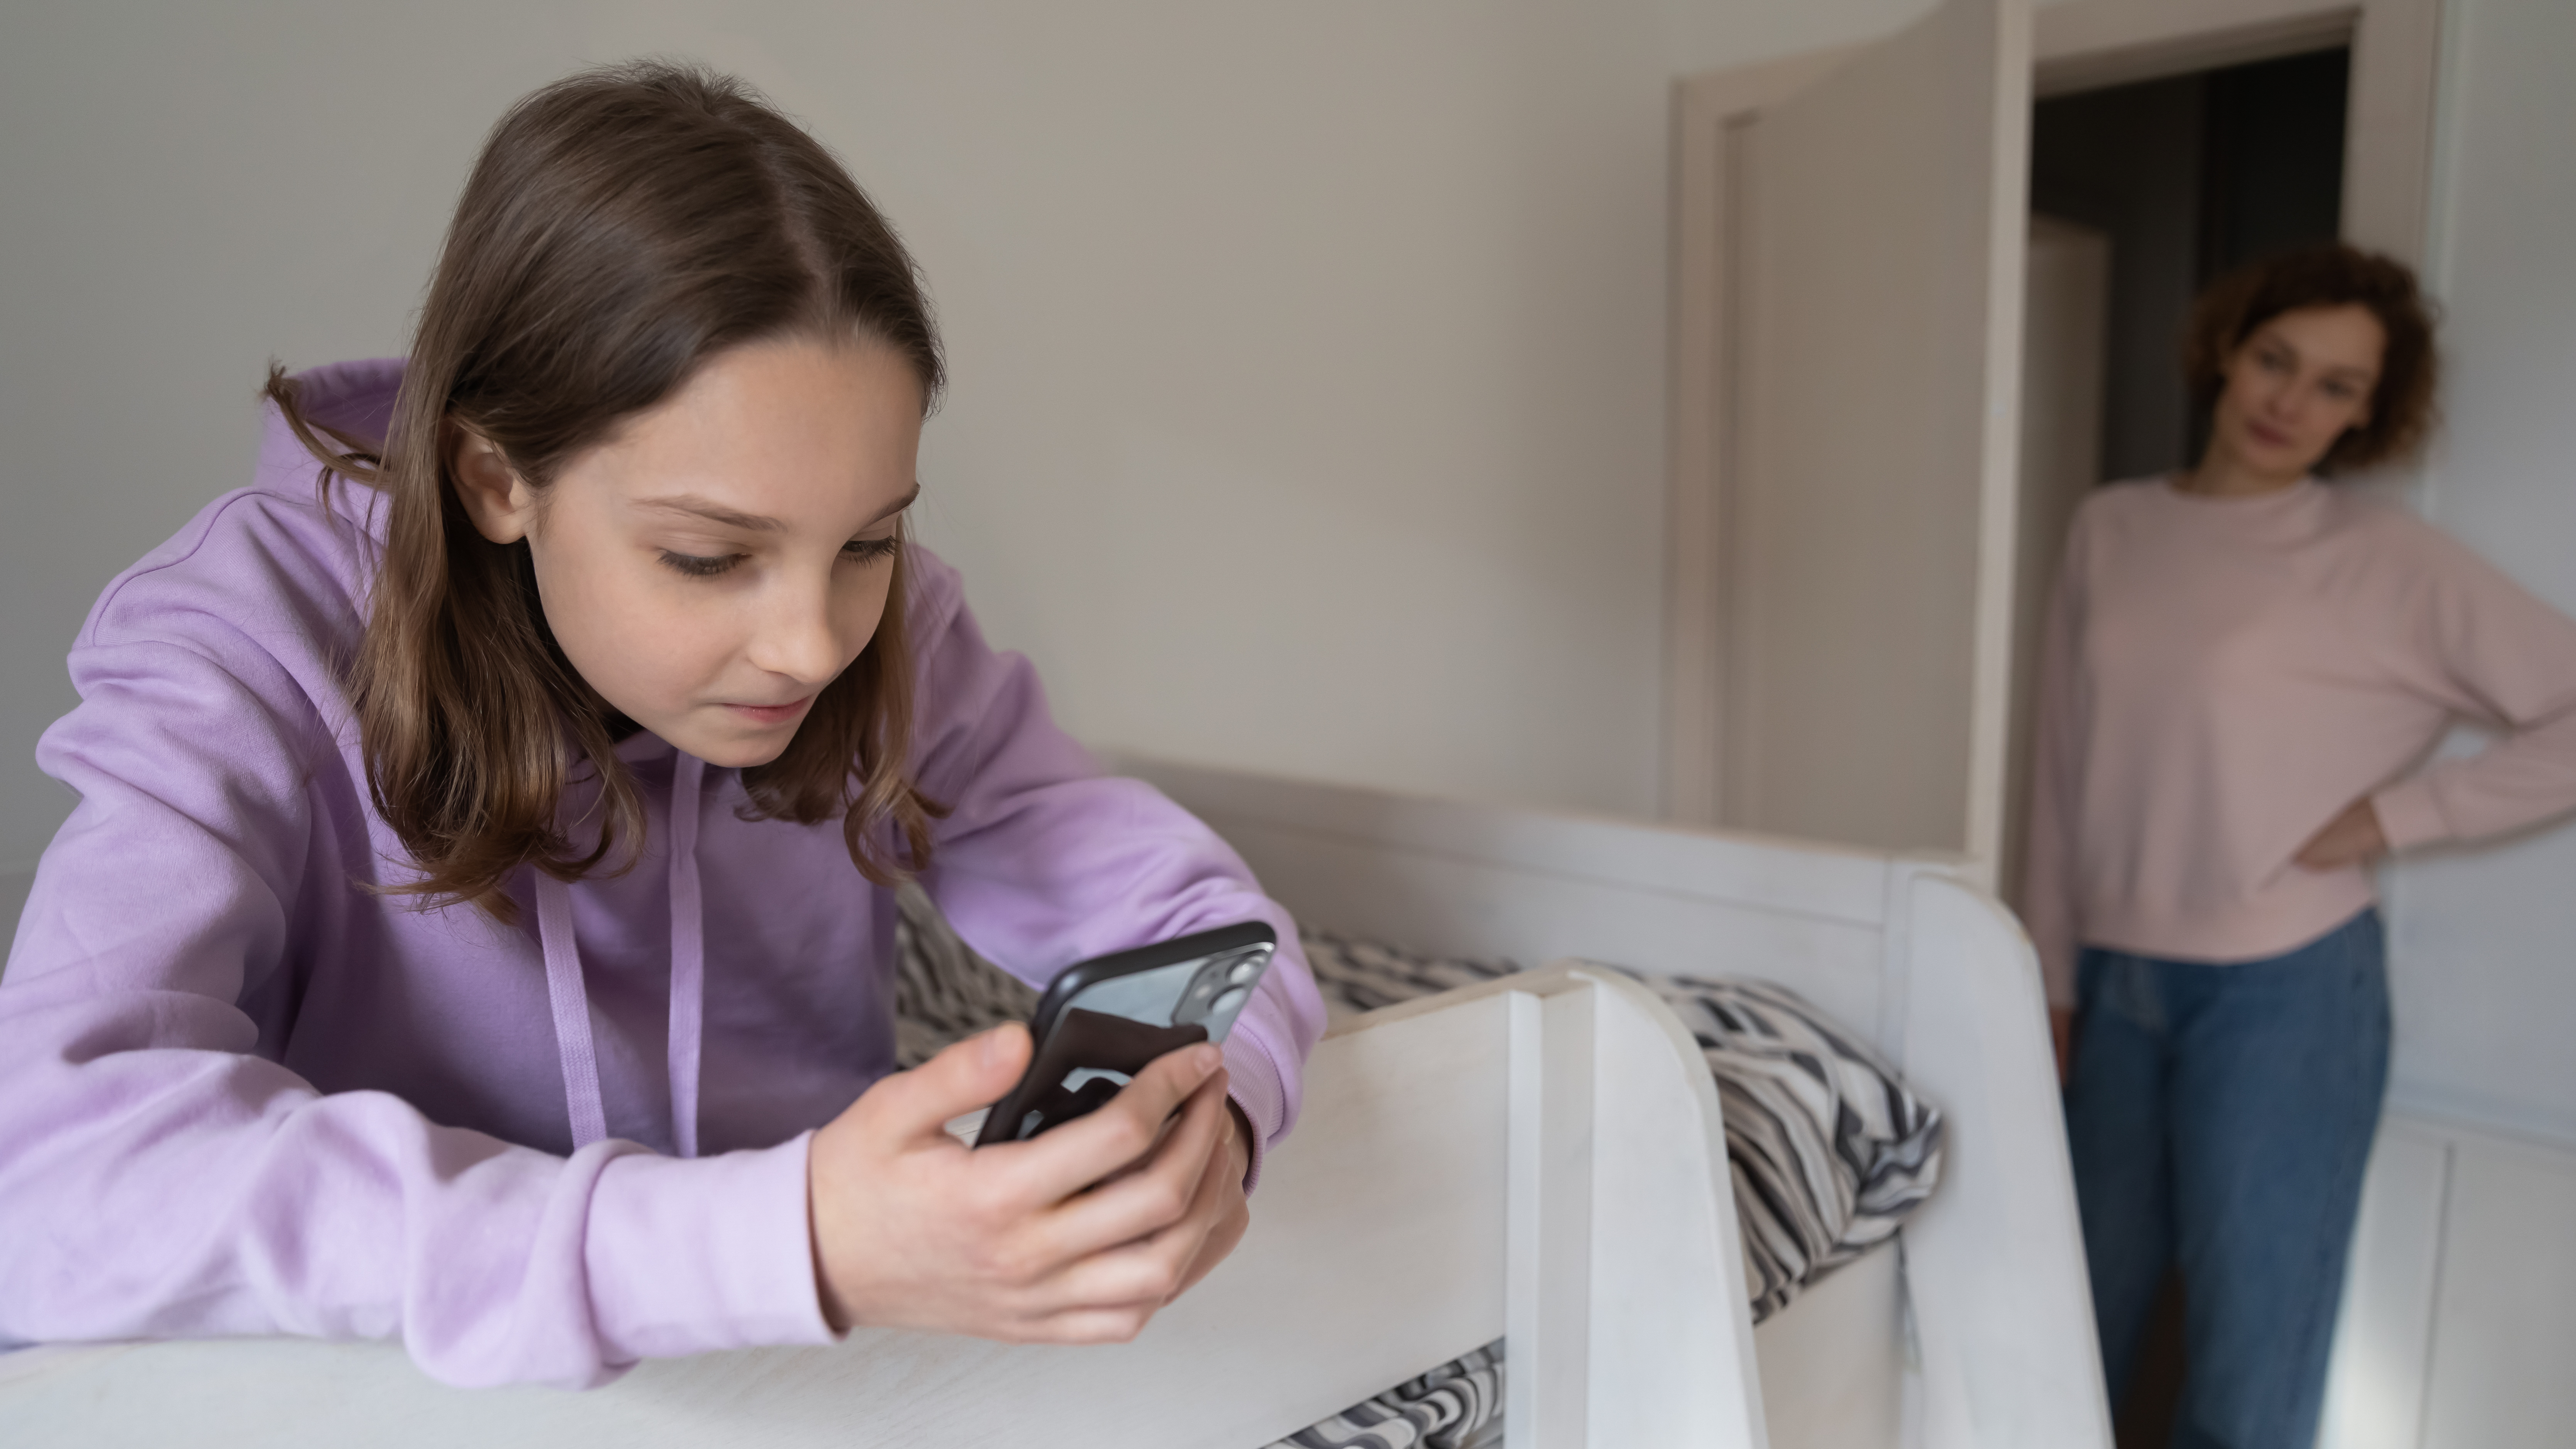 Uma garota usando um telefone enquanto uma mulher a observa |  Fonte: Shutterstock